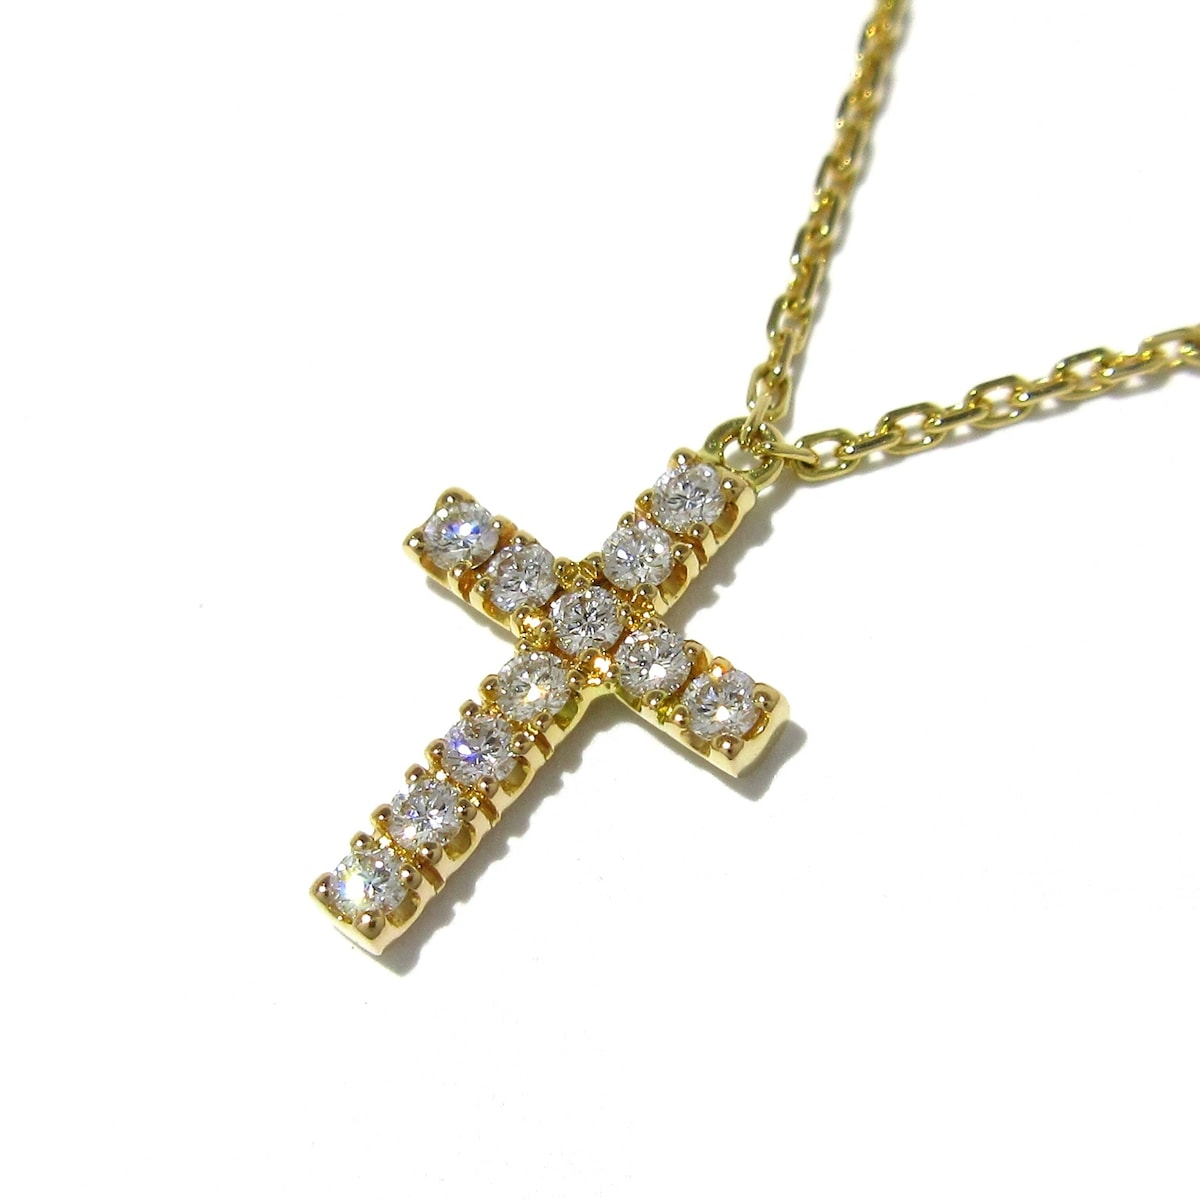 【中古】Cartier(カルティエ) シンボルネックレス ネックレス クロス(十字架)/11Pダイヤ K18PG×ダイヤモンド